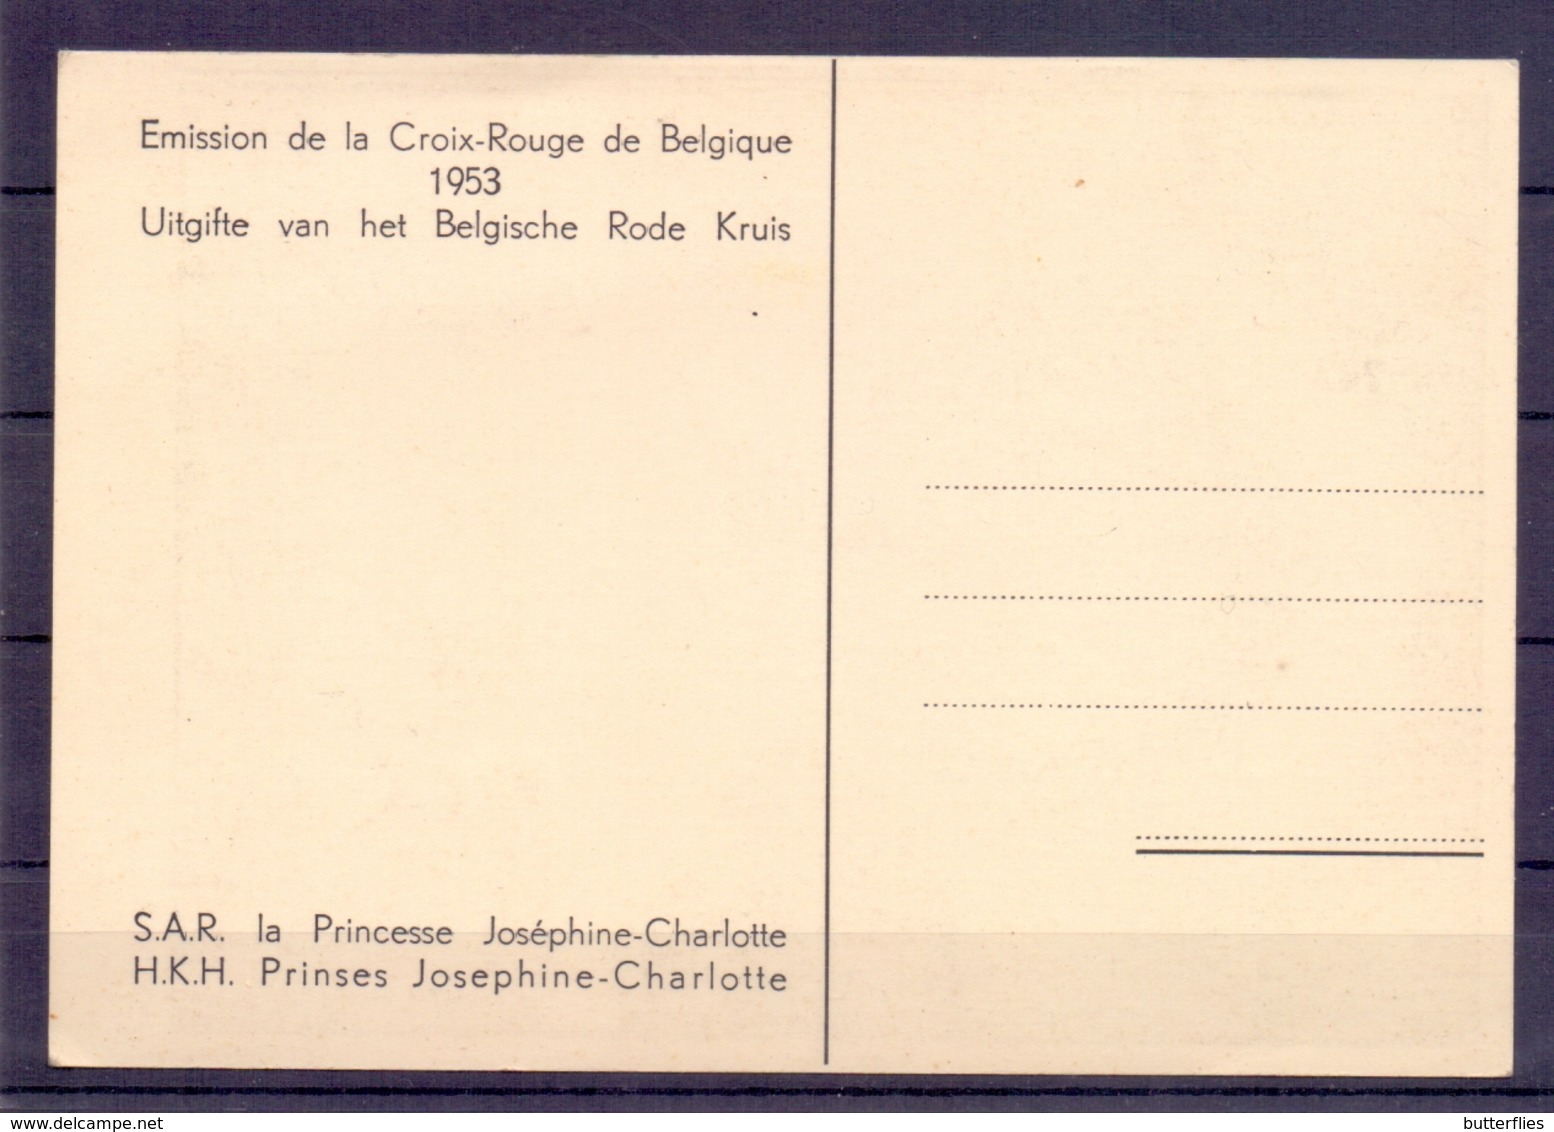 Antwerpen - Uitgifte V/h Belgische Rode Kruis - Prinses Josephine-Charlotte - 14-3-1953 - Antwerpen